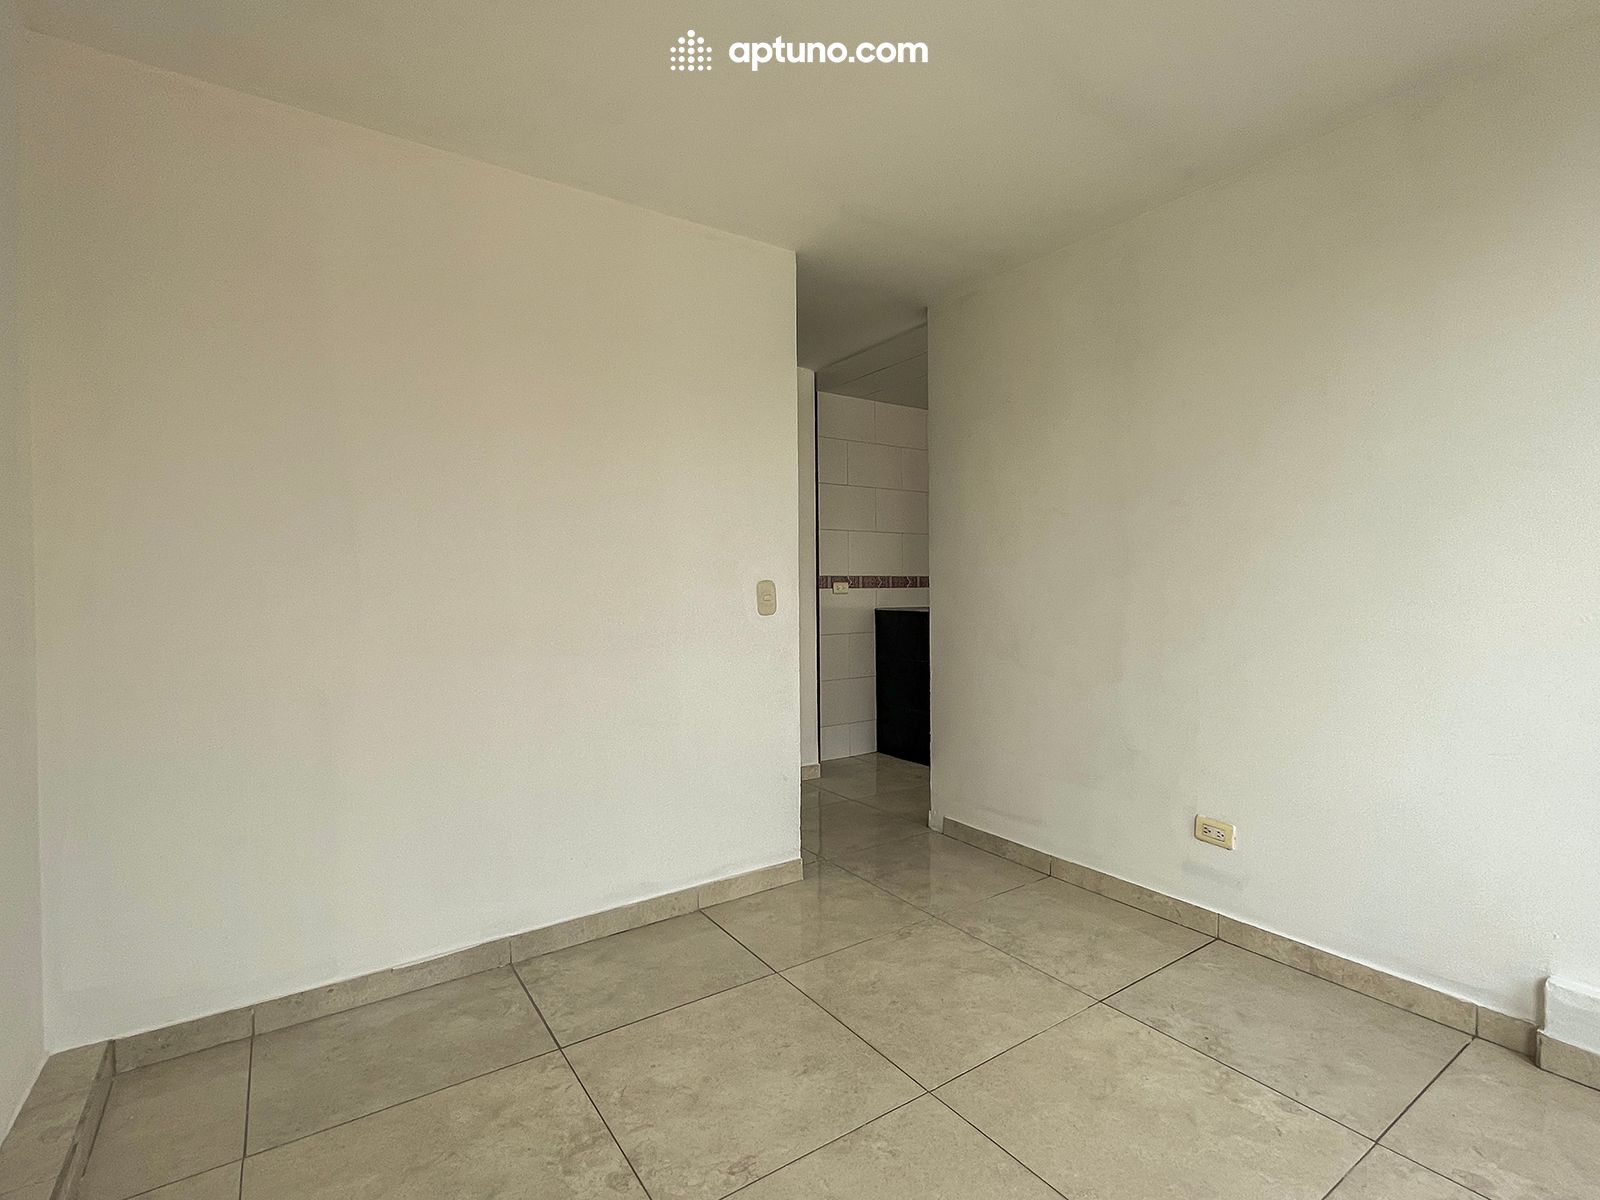 Apartamento en arriendo El Rincon de Santa Fe 30 m² - $ 600.000